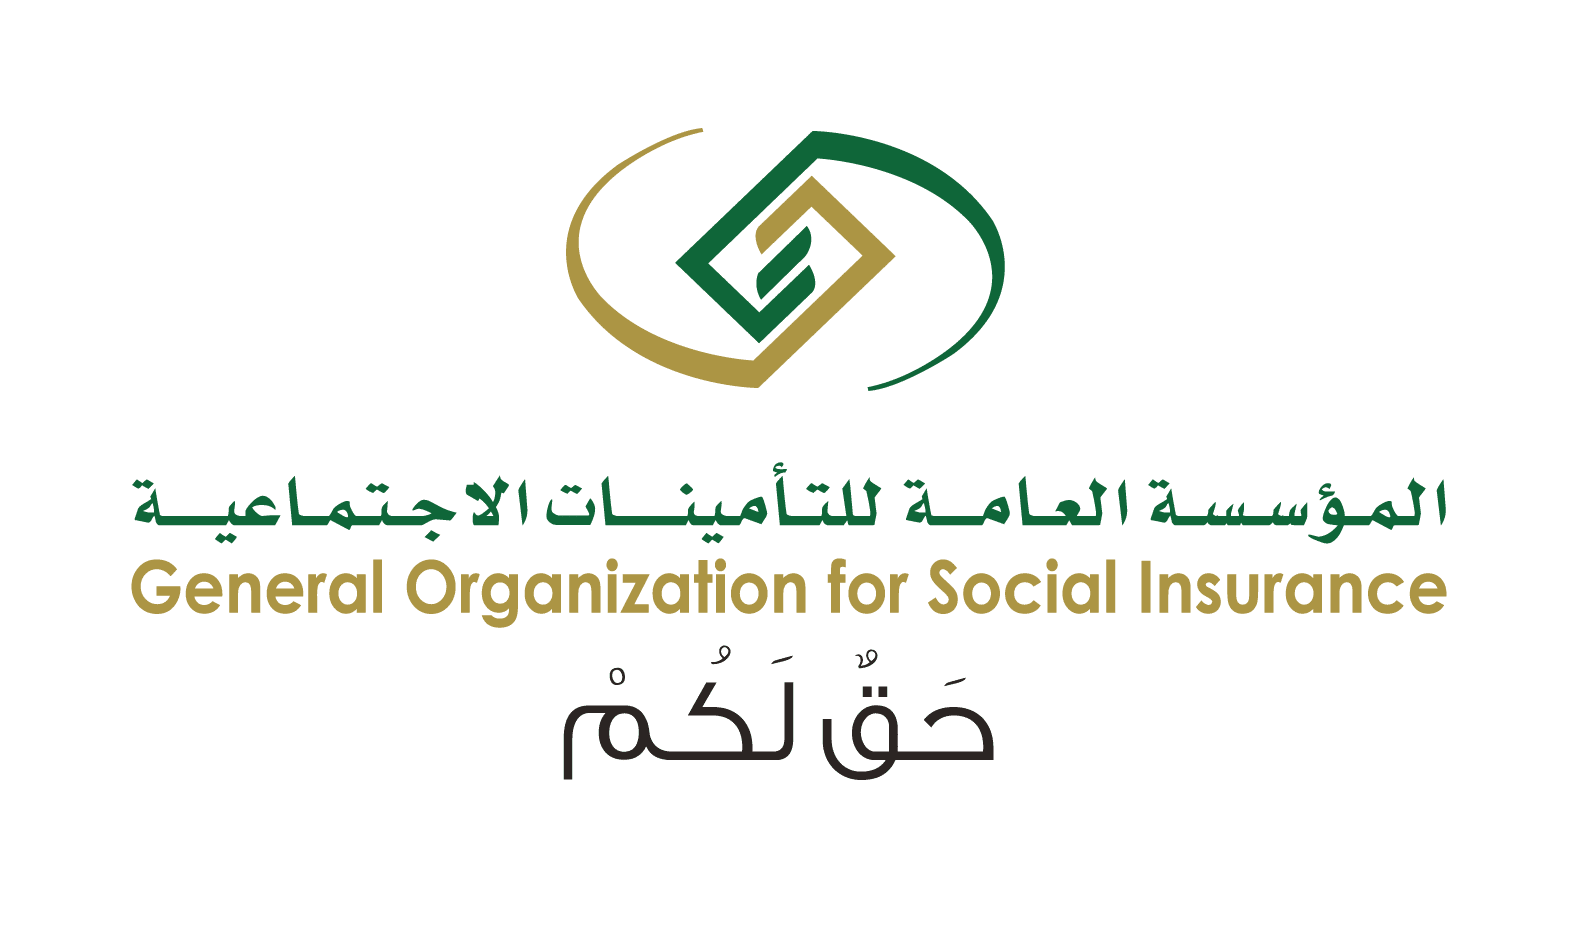 وظائف ادارية وتقنية وهندسية في التأمينات الاجتماعية – الرياض